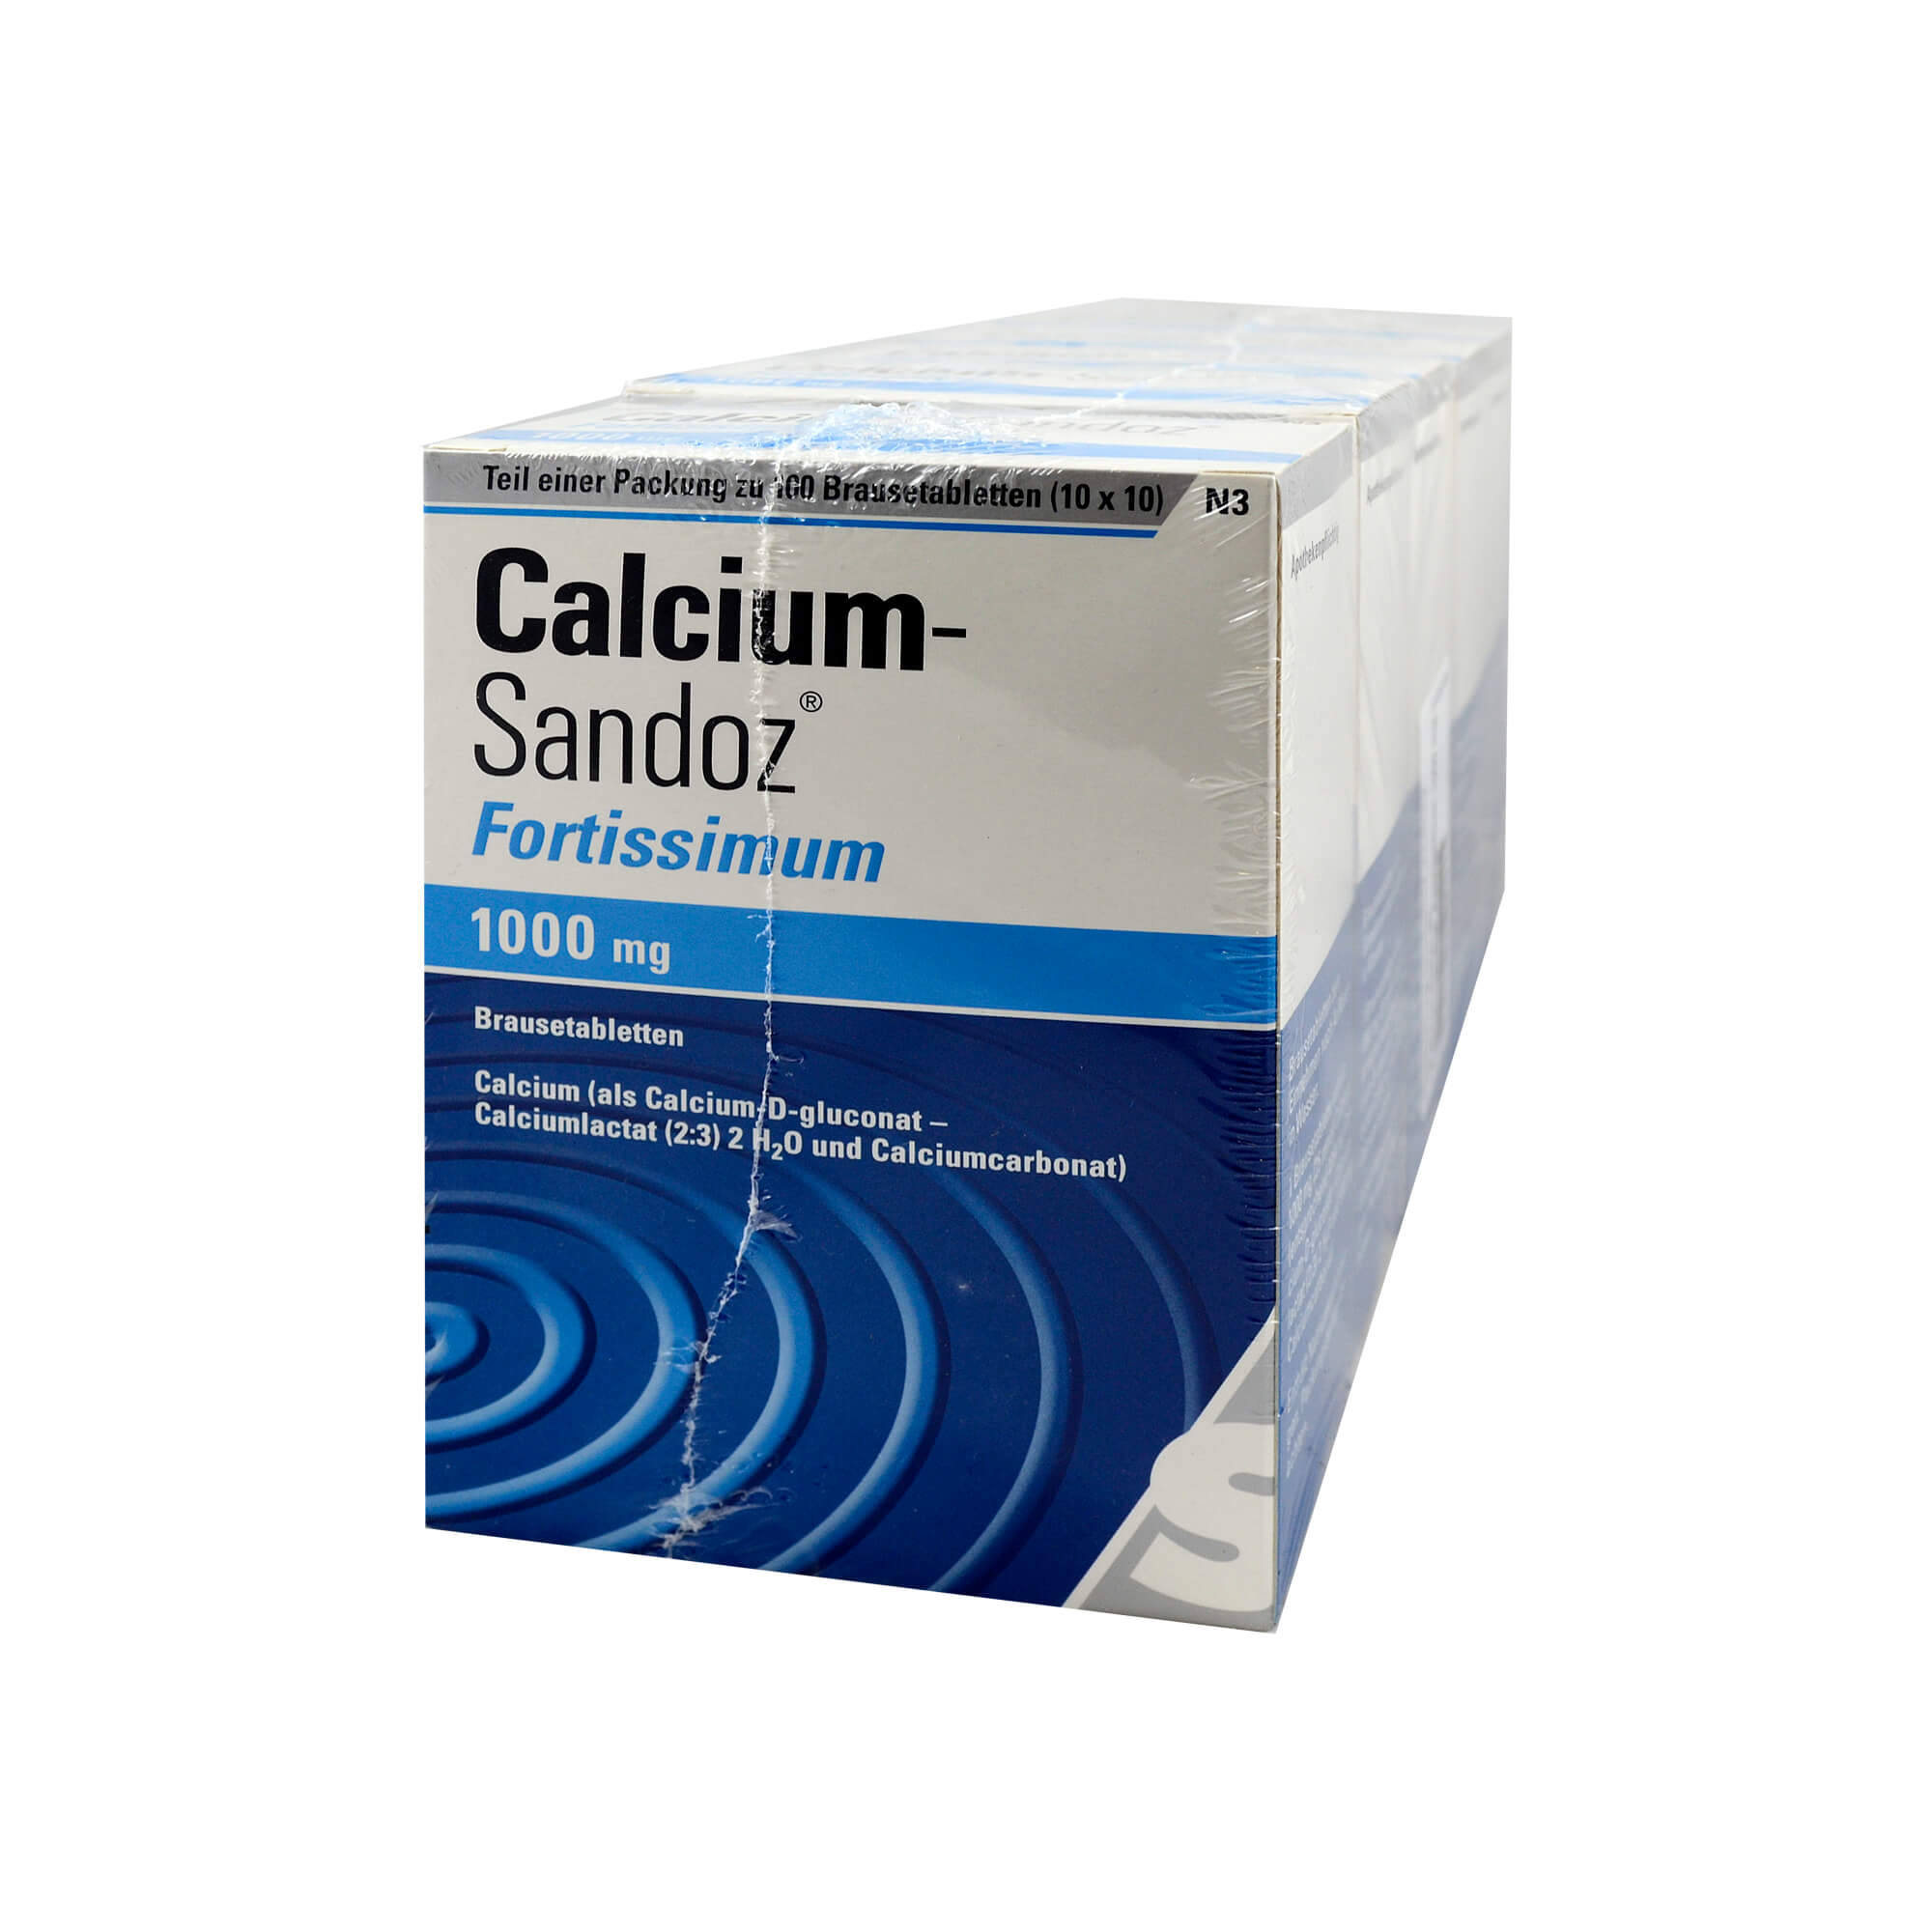 Zur Vorbeugung und Behandlung eines Calciummangels.